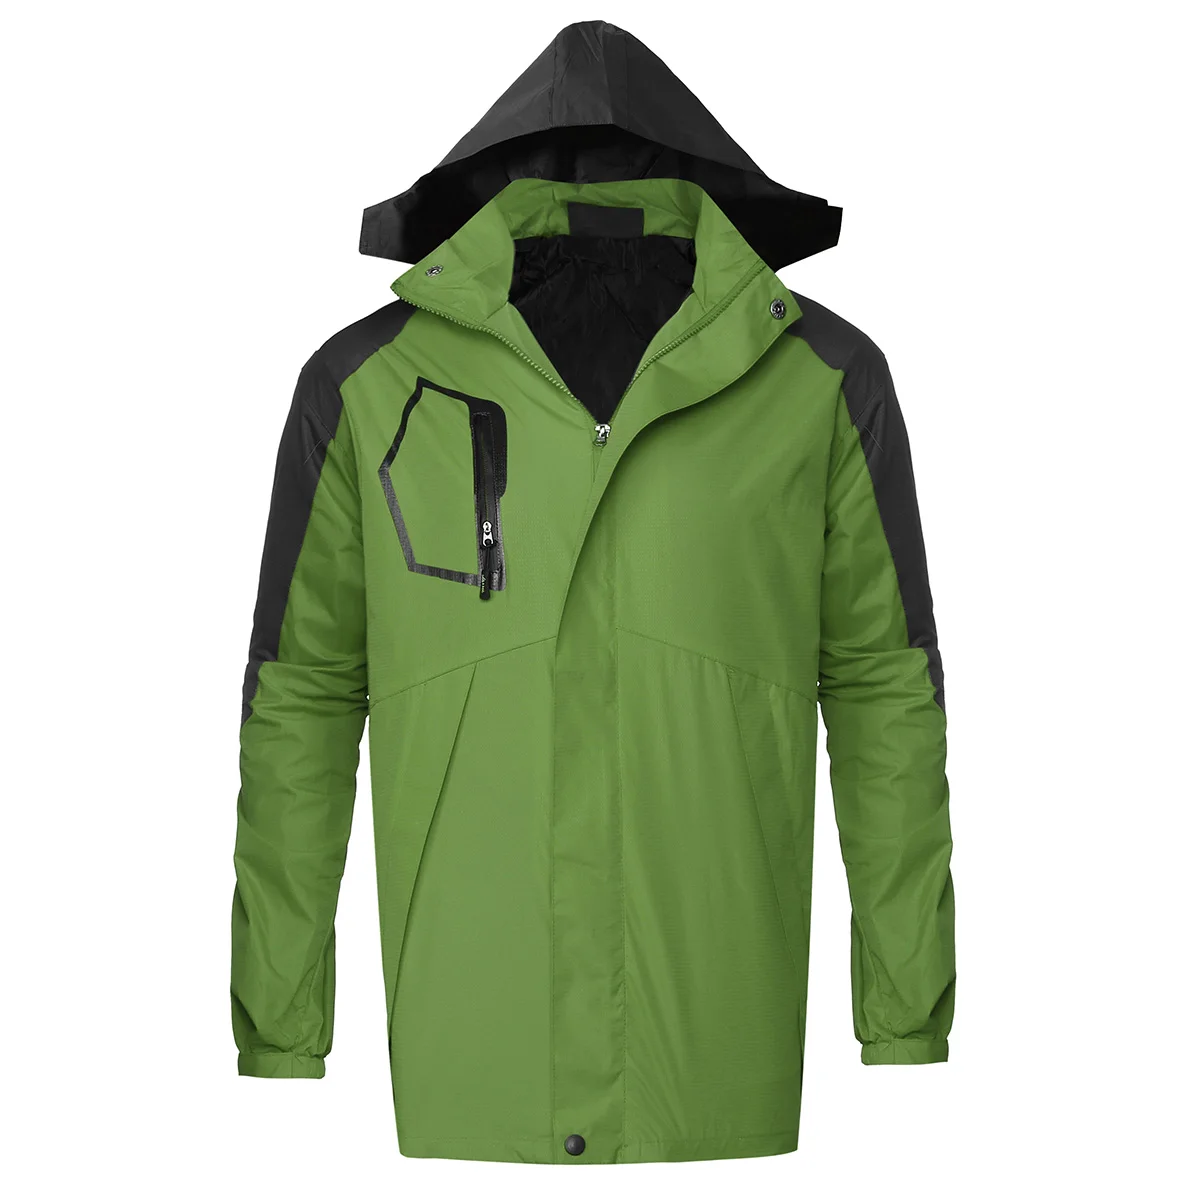 Лыжная теплая куртка для мужчин и женщин, водонепроницаемая зимняя куртка с флисовой подкладкой, пальто для сноуборда, ветрозащитная ткань, зимние теплые зимние костюмы - Цвет: Light green